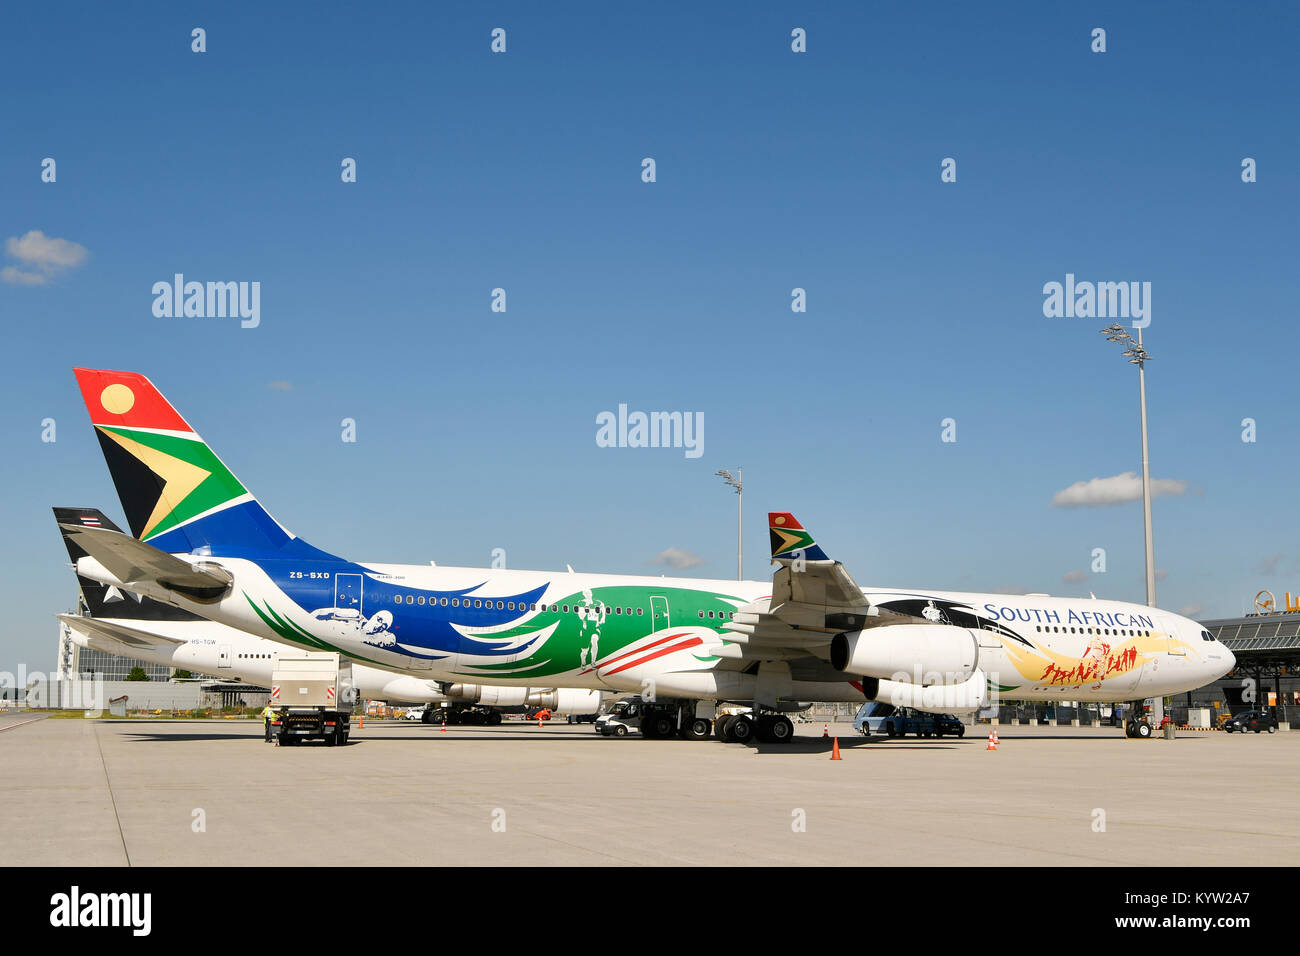 South African Airlines, SAA, Airbus, el A340, edición especial, fútbol, avión, avión, avión, las compañías aéreas, la posición, la rampa, el aeropuerto de Munich, Foto de stock